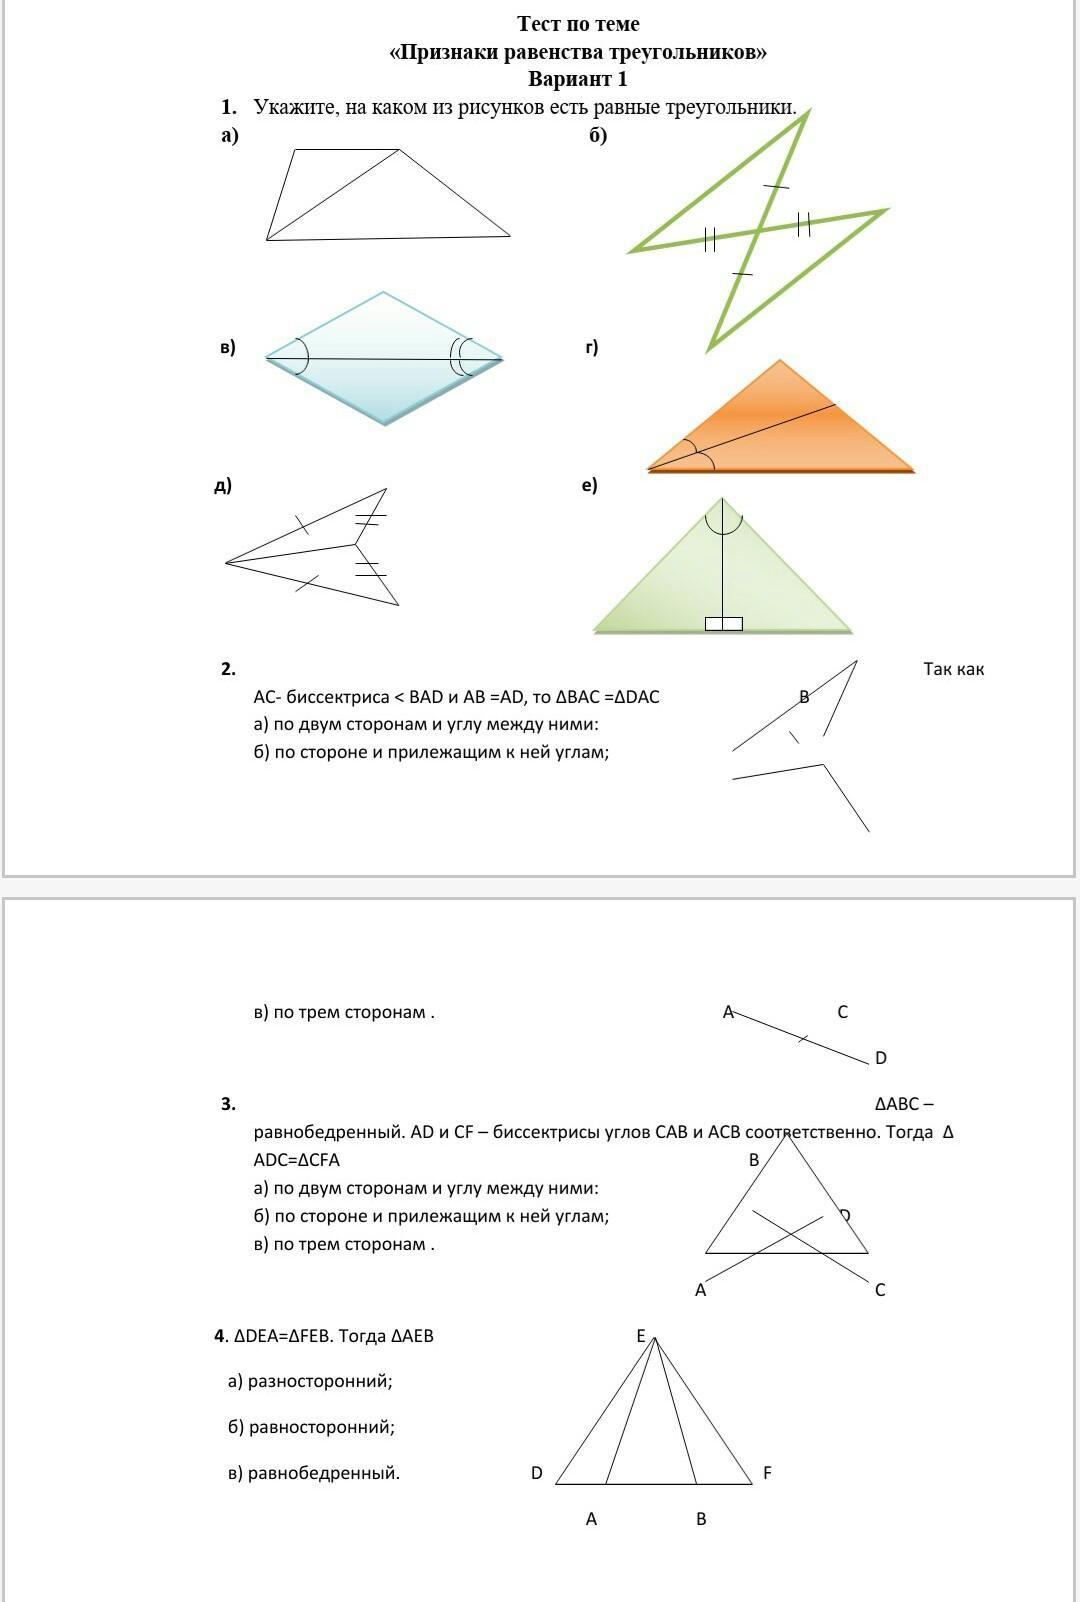 Тест треугольники признаки равенства треугольников ответы. Тест по геометрии 7 класс признаки равенства треугольников. Тест признаки равенства треугольников 7 класс. Геометрия 7 класс тест по теме признаки равенства треугольников. Тест на тему "признаки равенства треугольников" 7 класс Атанасян..